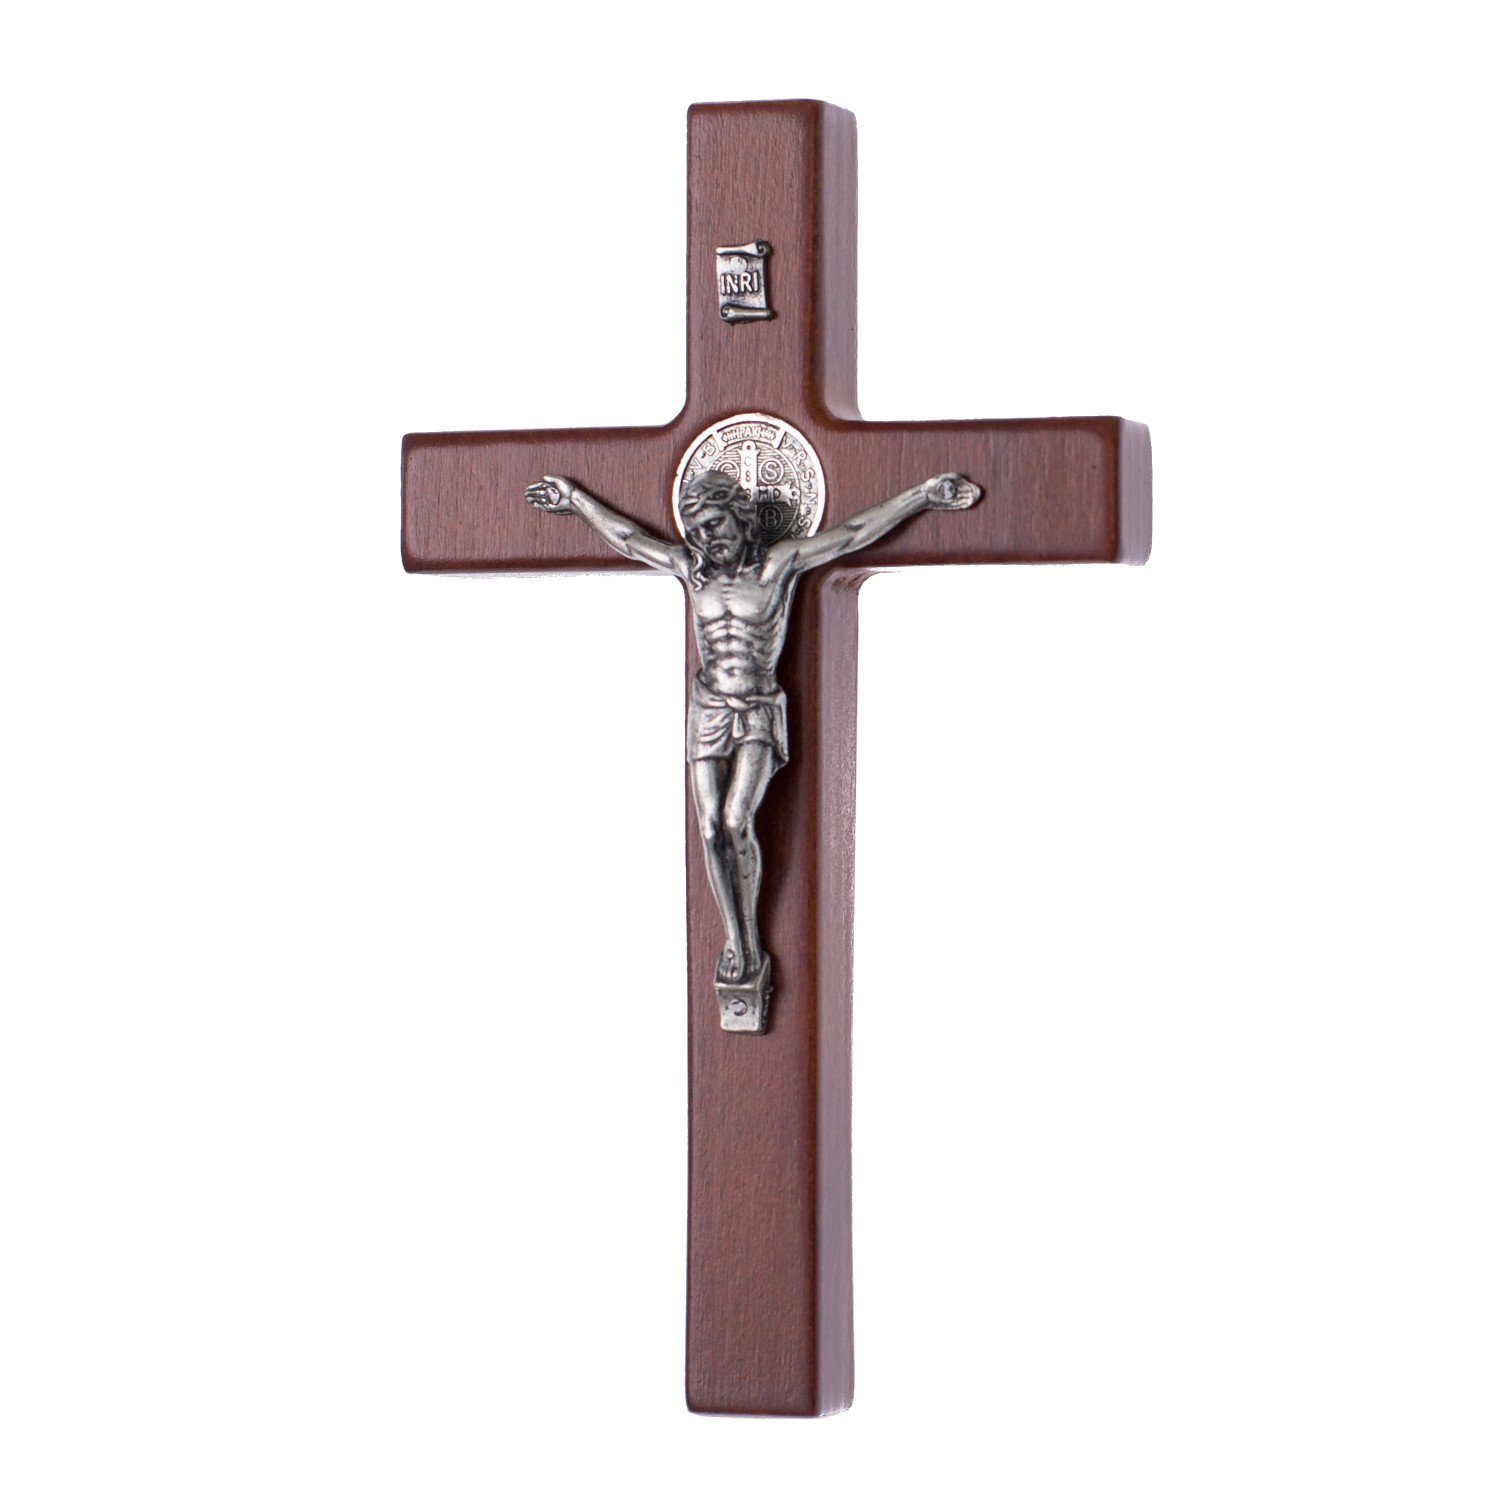 Luda Studio Wanddekoobjekt, Kreuz des heiligen Benedikt mit dem Passionskreuz